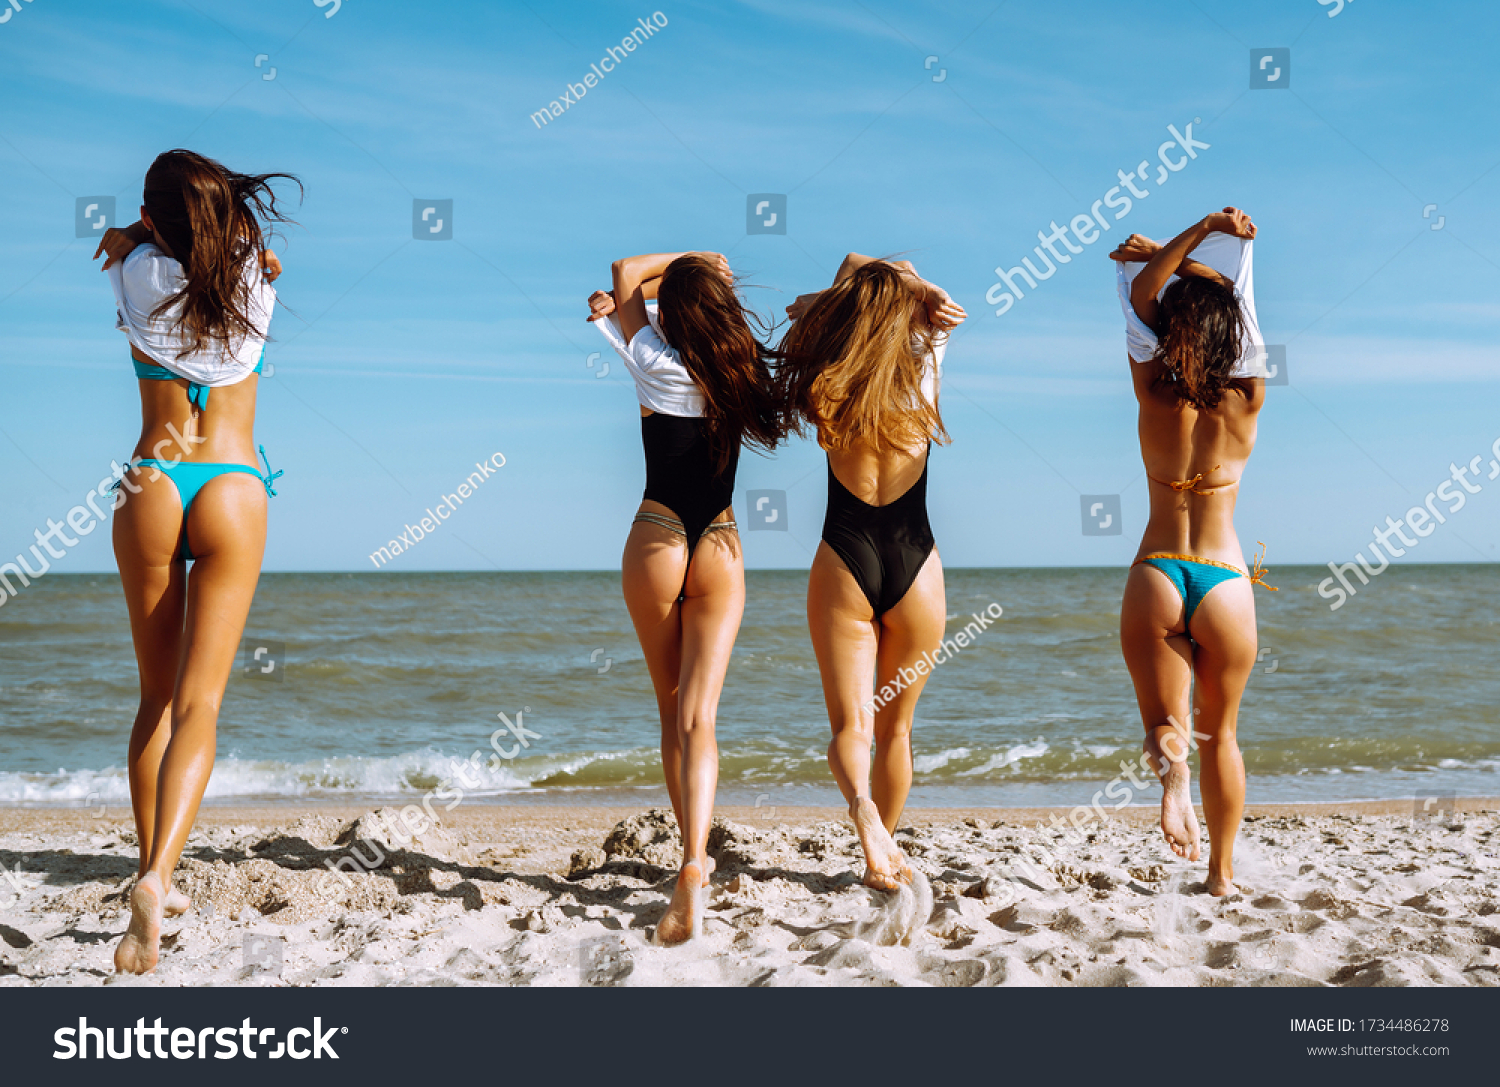 Girls Taking Off Bikini